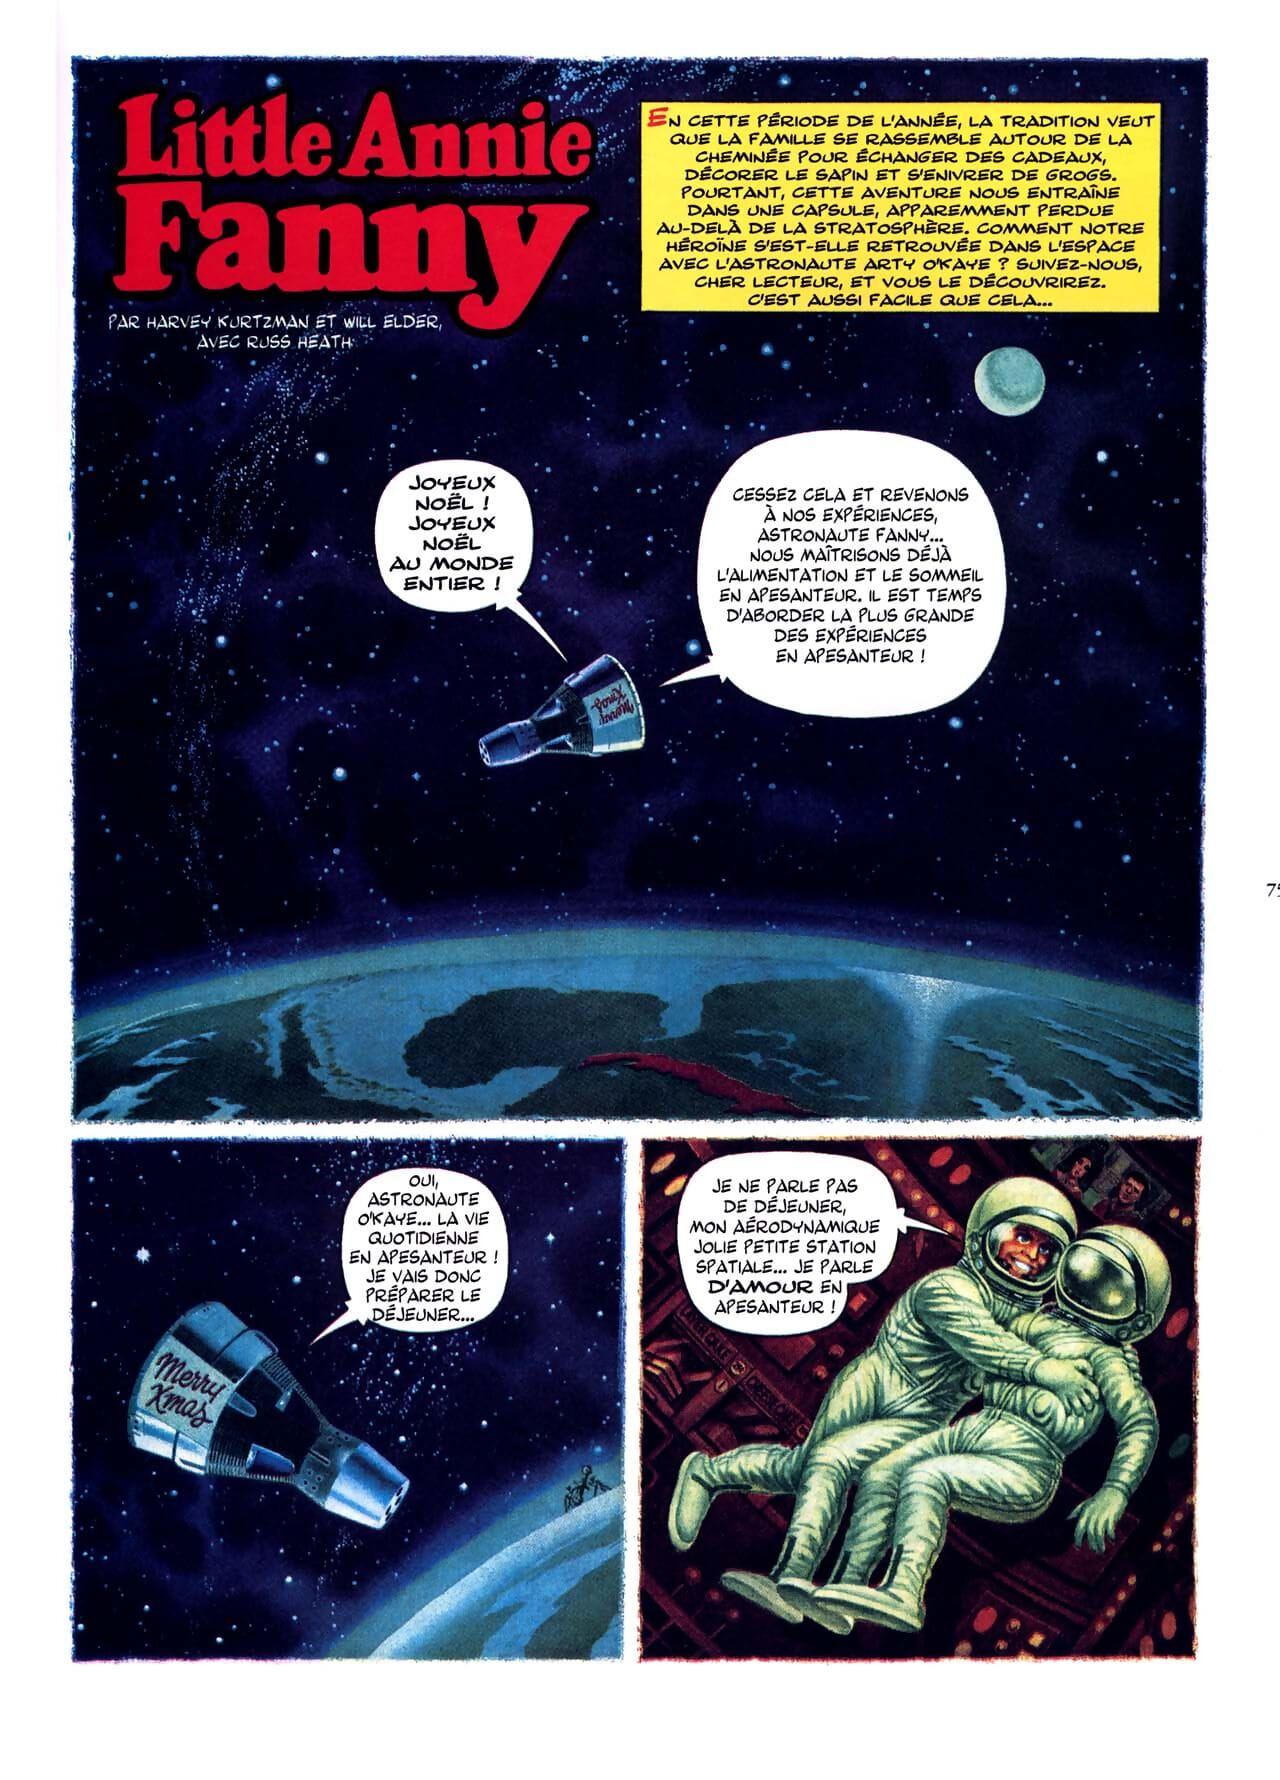 น้อย แอนนี่ fanny vol 1 - 1962-1965 - ส่วนหนึ่ง 4 page 1